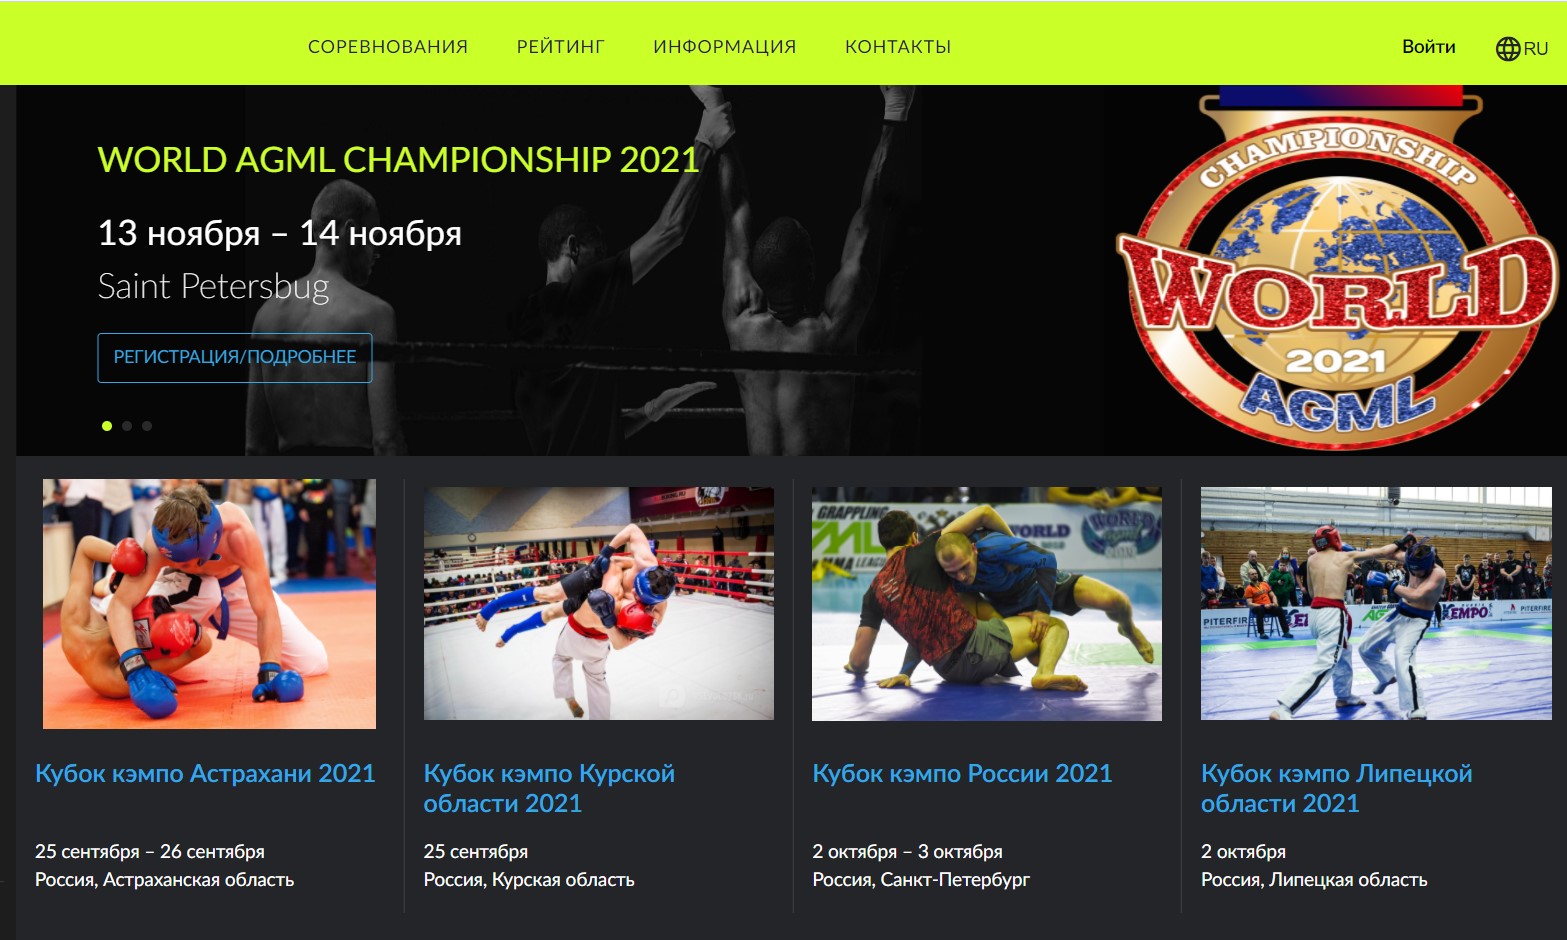 Календарь соревнований и регистрация на турниры теперь осуществляется на веб-сервисе AGML